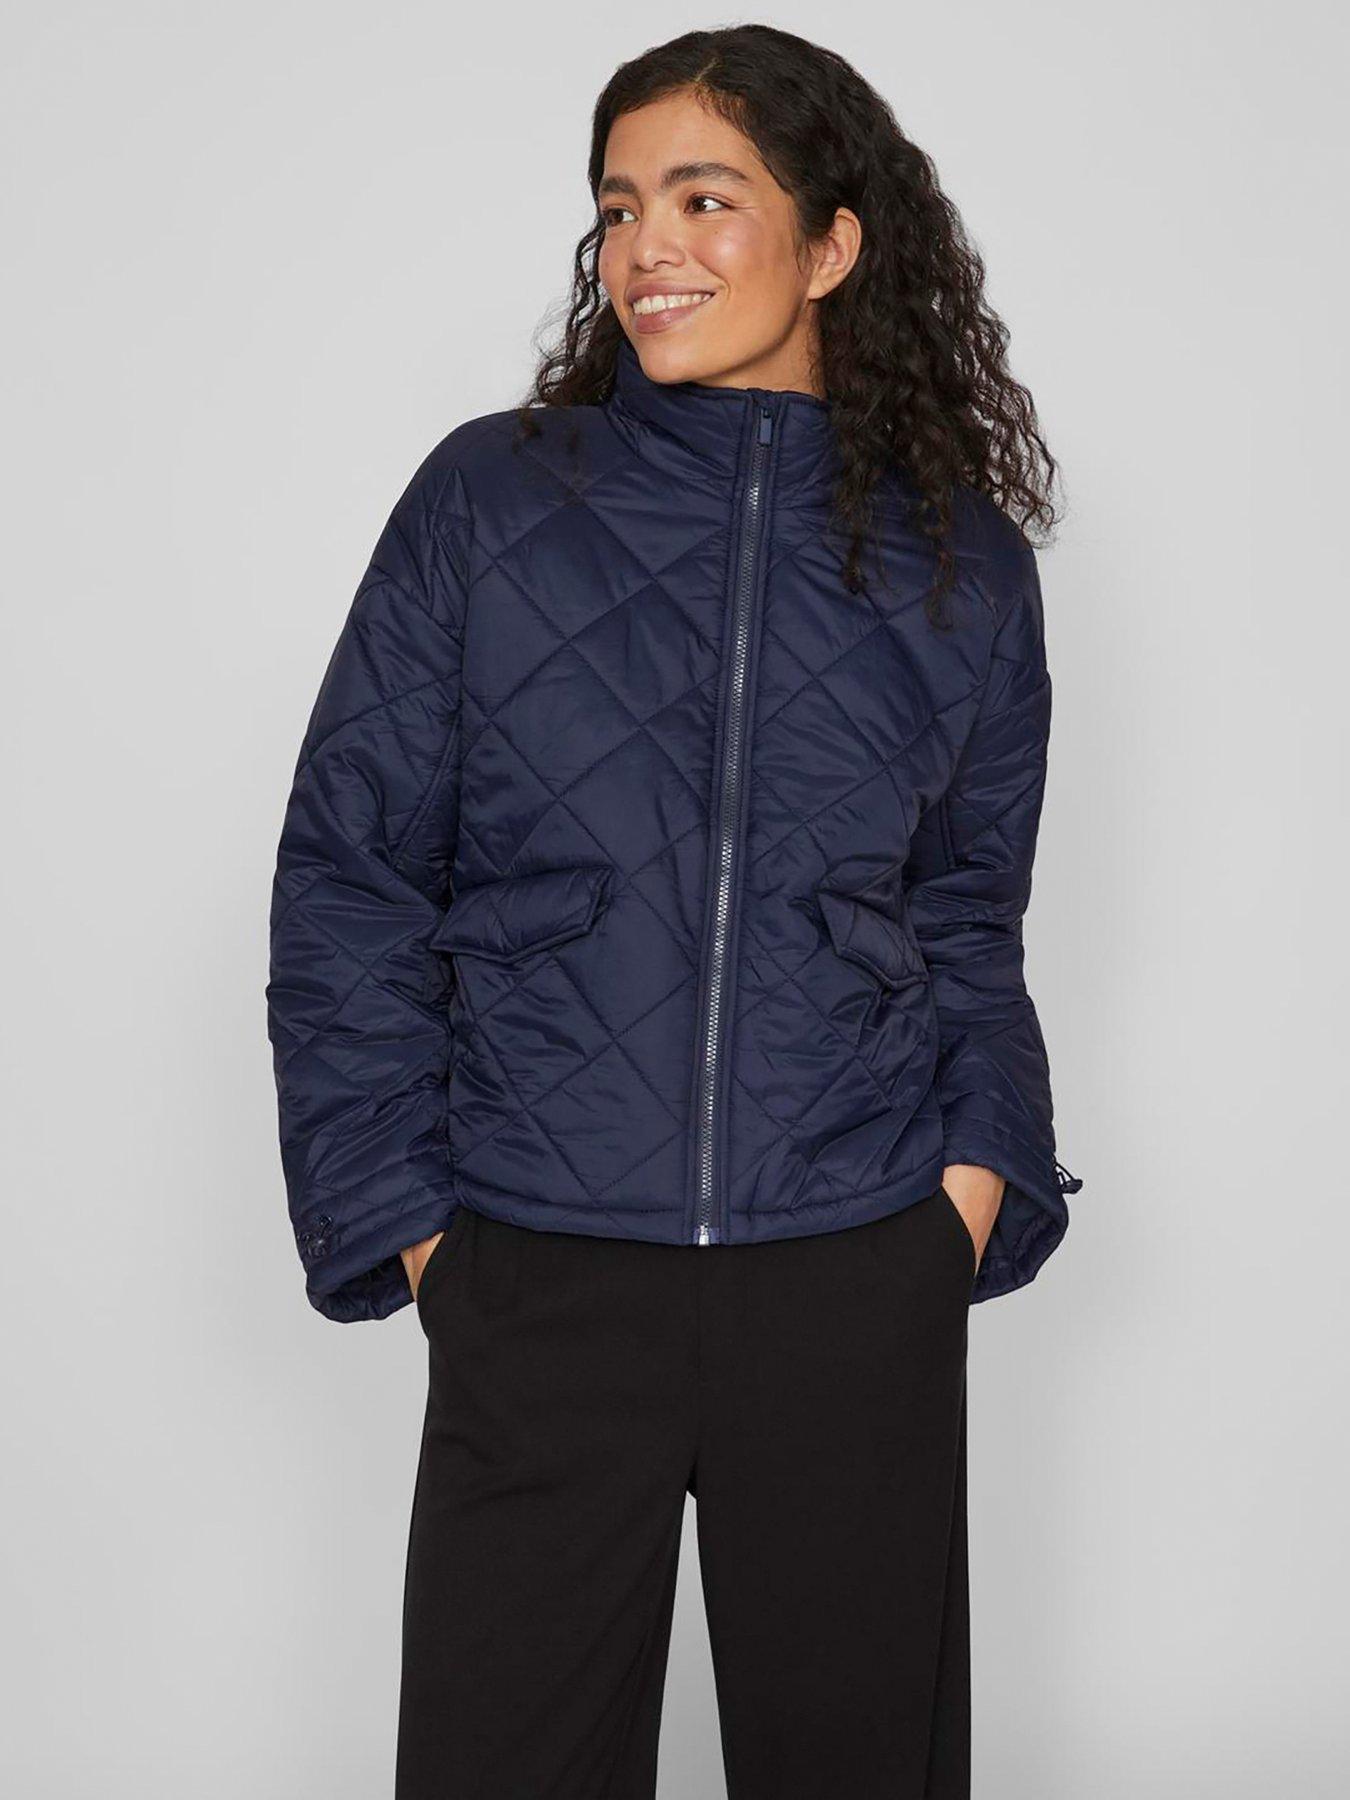 DKNY Sport Women's Small Black Logo Puffer Hooded Weatherproof Jacket